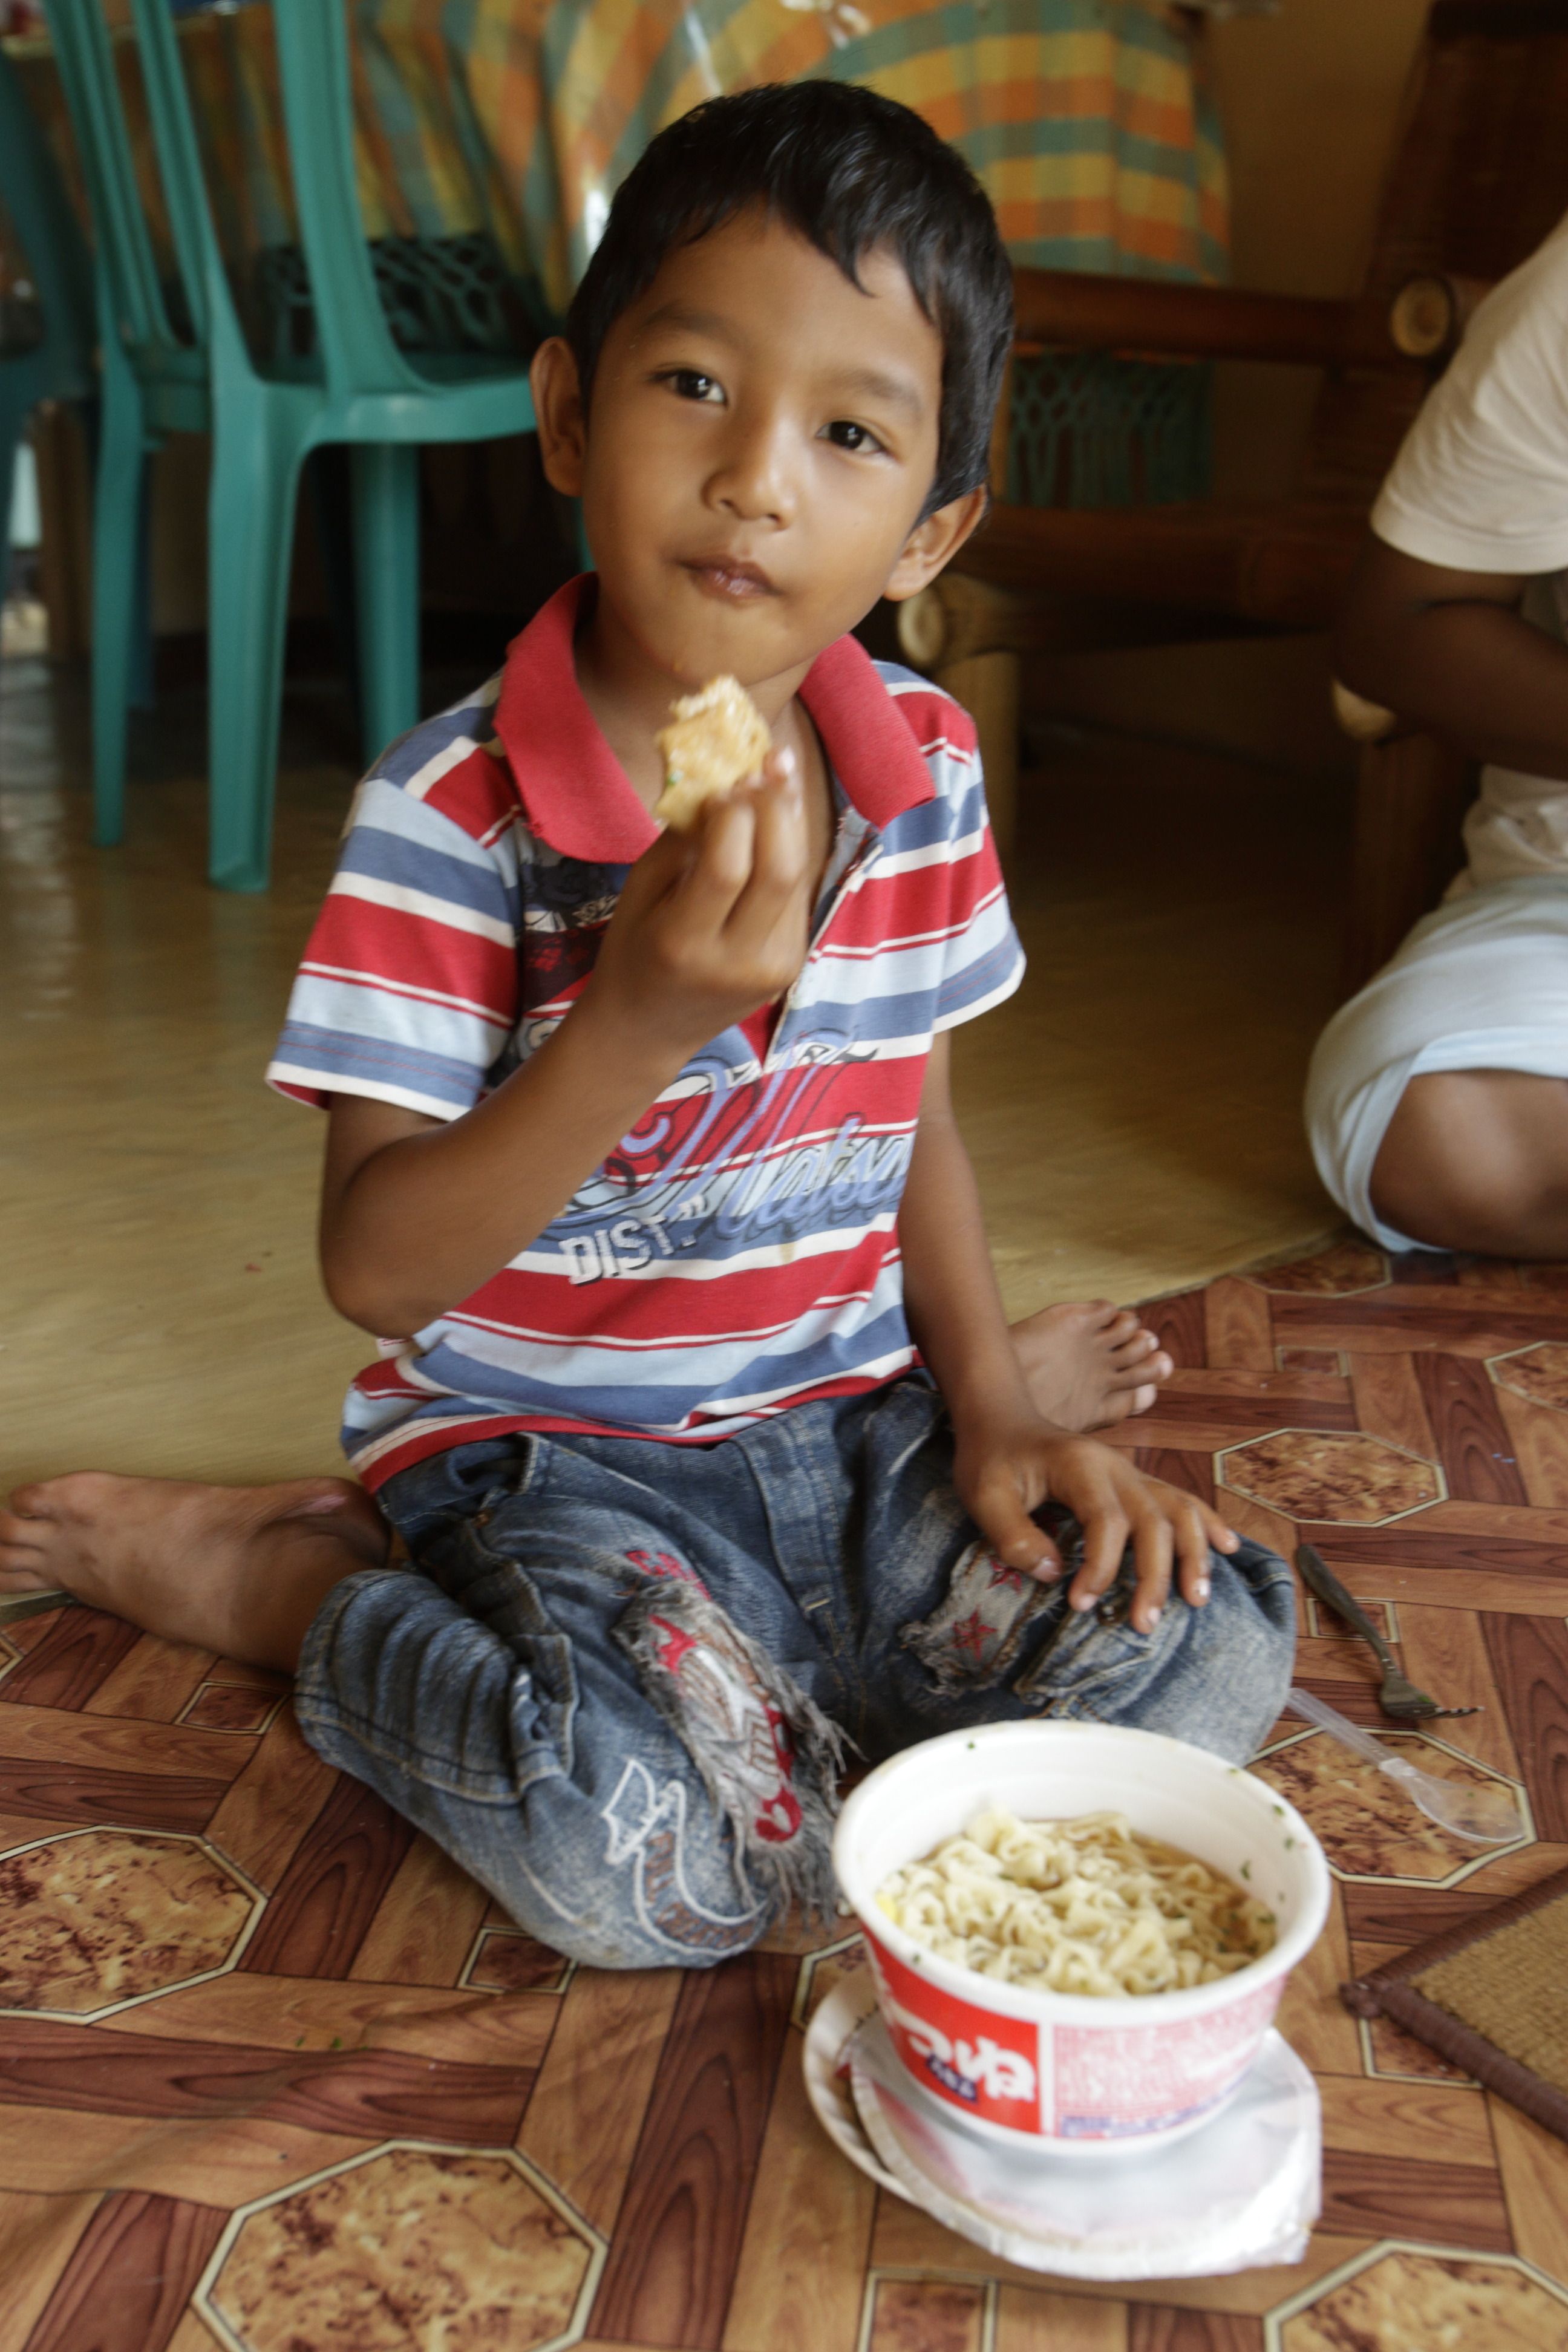 「インドネシアの子はカップうどんの油揚げを、スナック菓子のようにポリポリ食べていました」（筆者談）